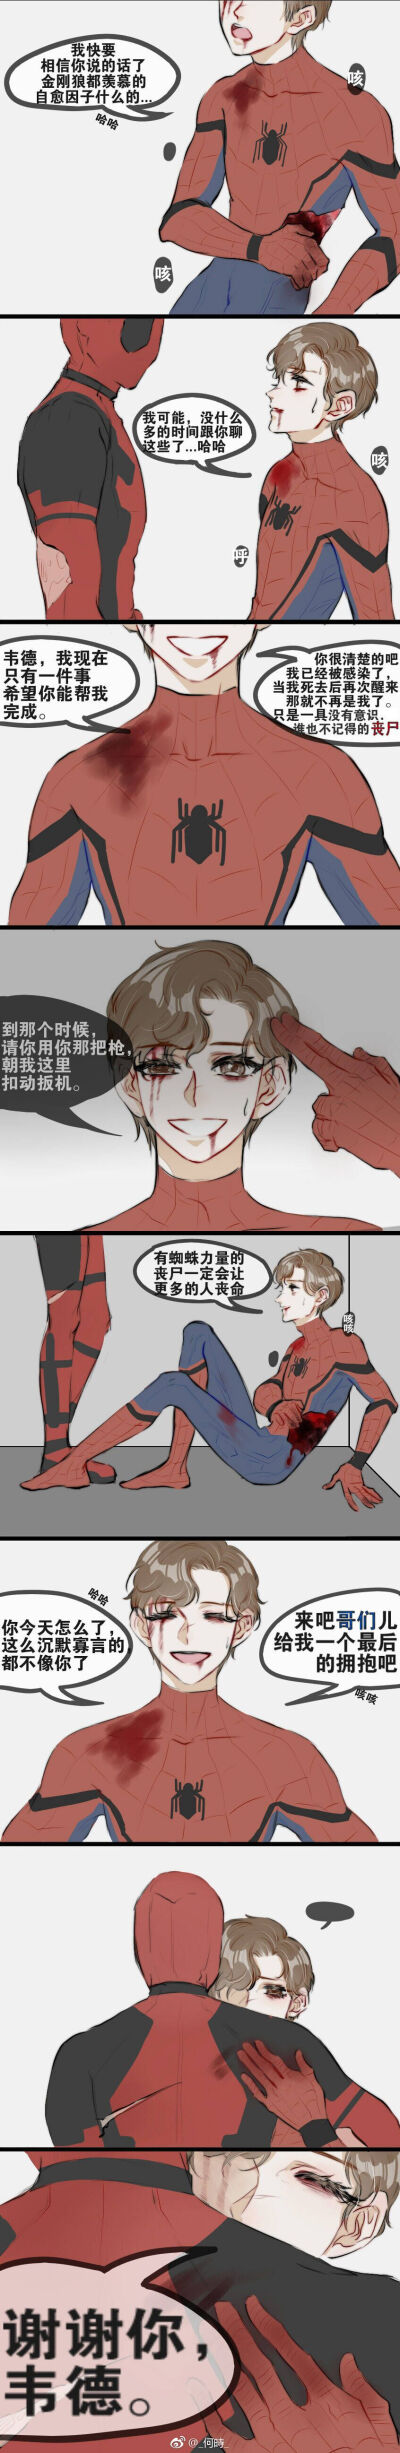 蜘蛛侠vs死侍